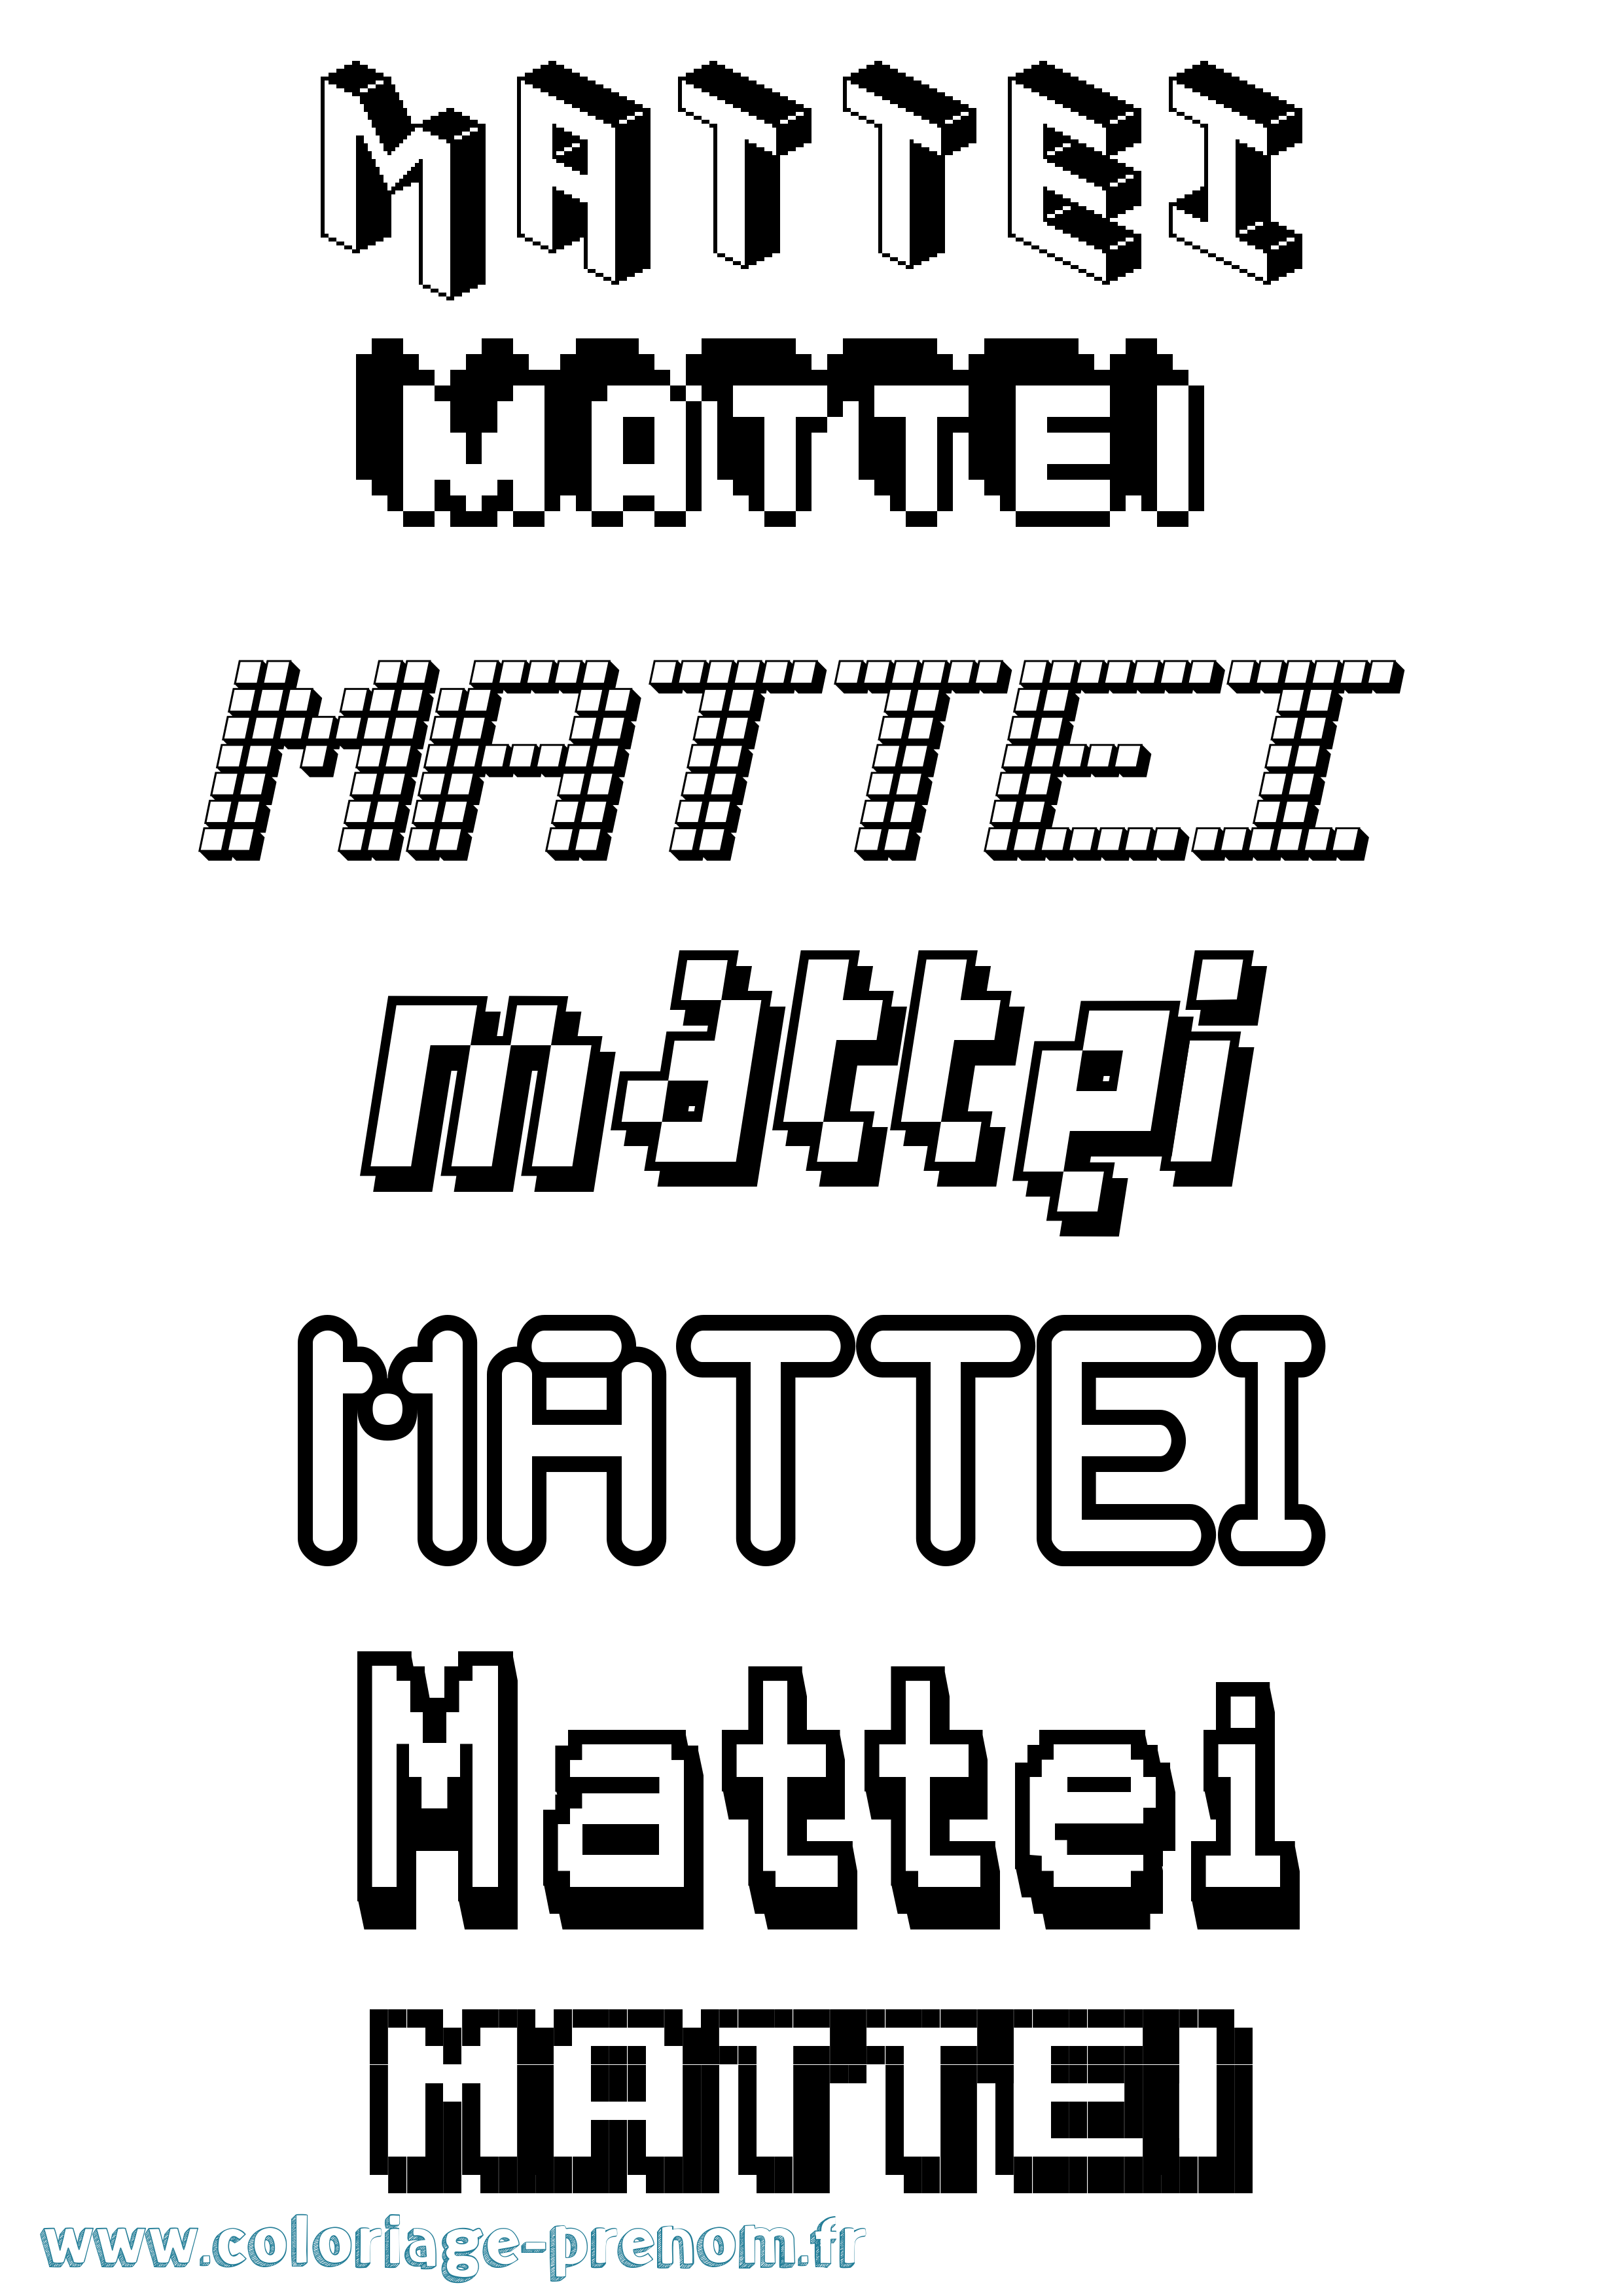 Coloriage prénom Mattei Pixel